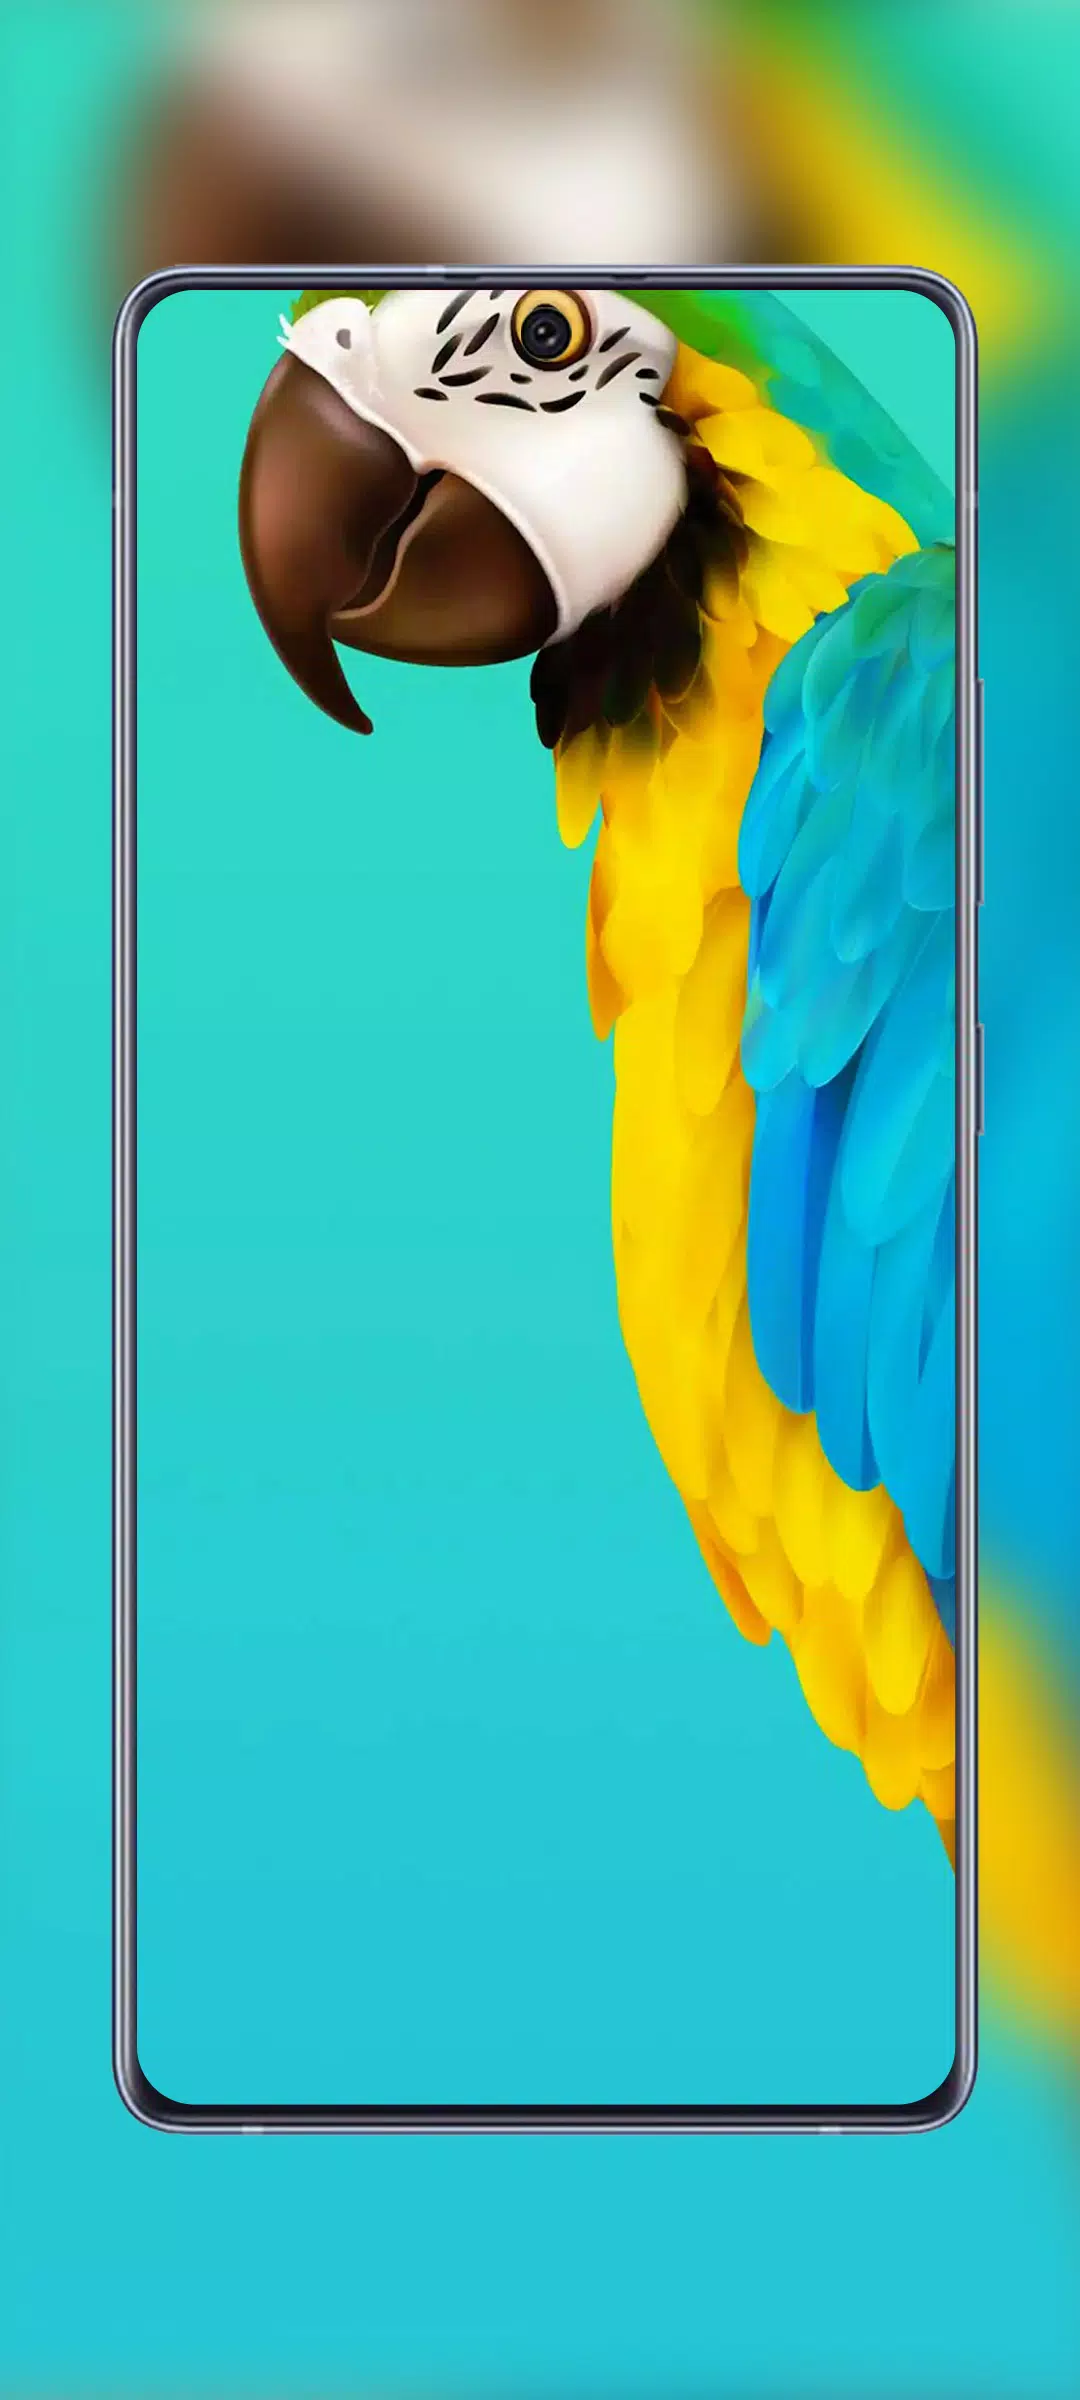 Với bộ sưu tập đa dạng của Samsung Galaxy A72 và A52 Wallpapers, bạn có thể tải xuống và trang trí cho điện thoại mình một cách dễ dàng. Hãy chiêm ngưỡng những thiết kế tuyệt đẹp, kết hợp với độ phân giải cao để làm cho màn hình điện thoại thêm sinh động hơn bao giờ hết. Hãy click để xem hình ảnh về các loại wallpaper của Samsung Galaxy A72 và A